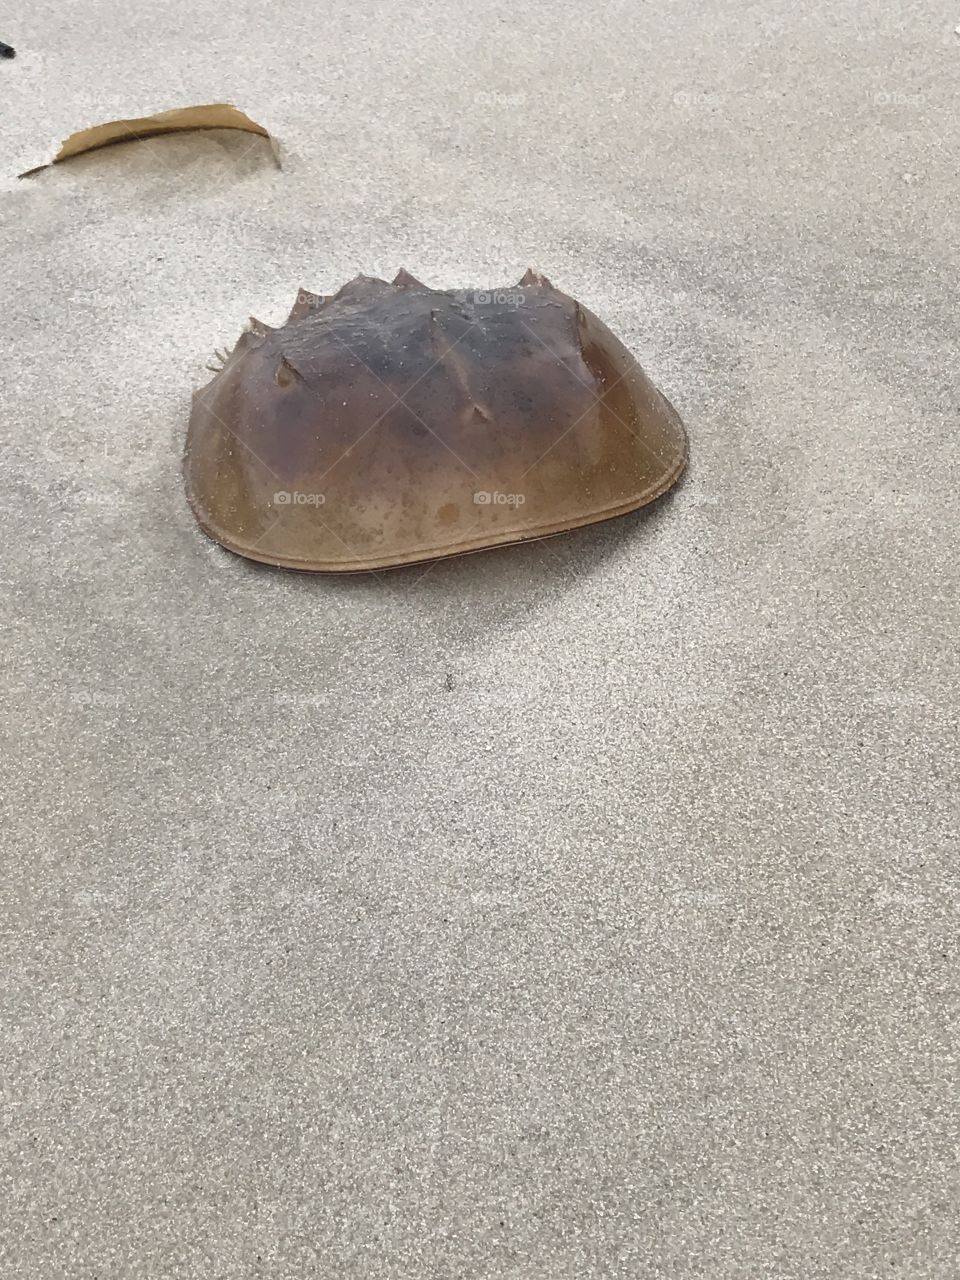 Horseshoe crab washed up.